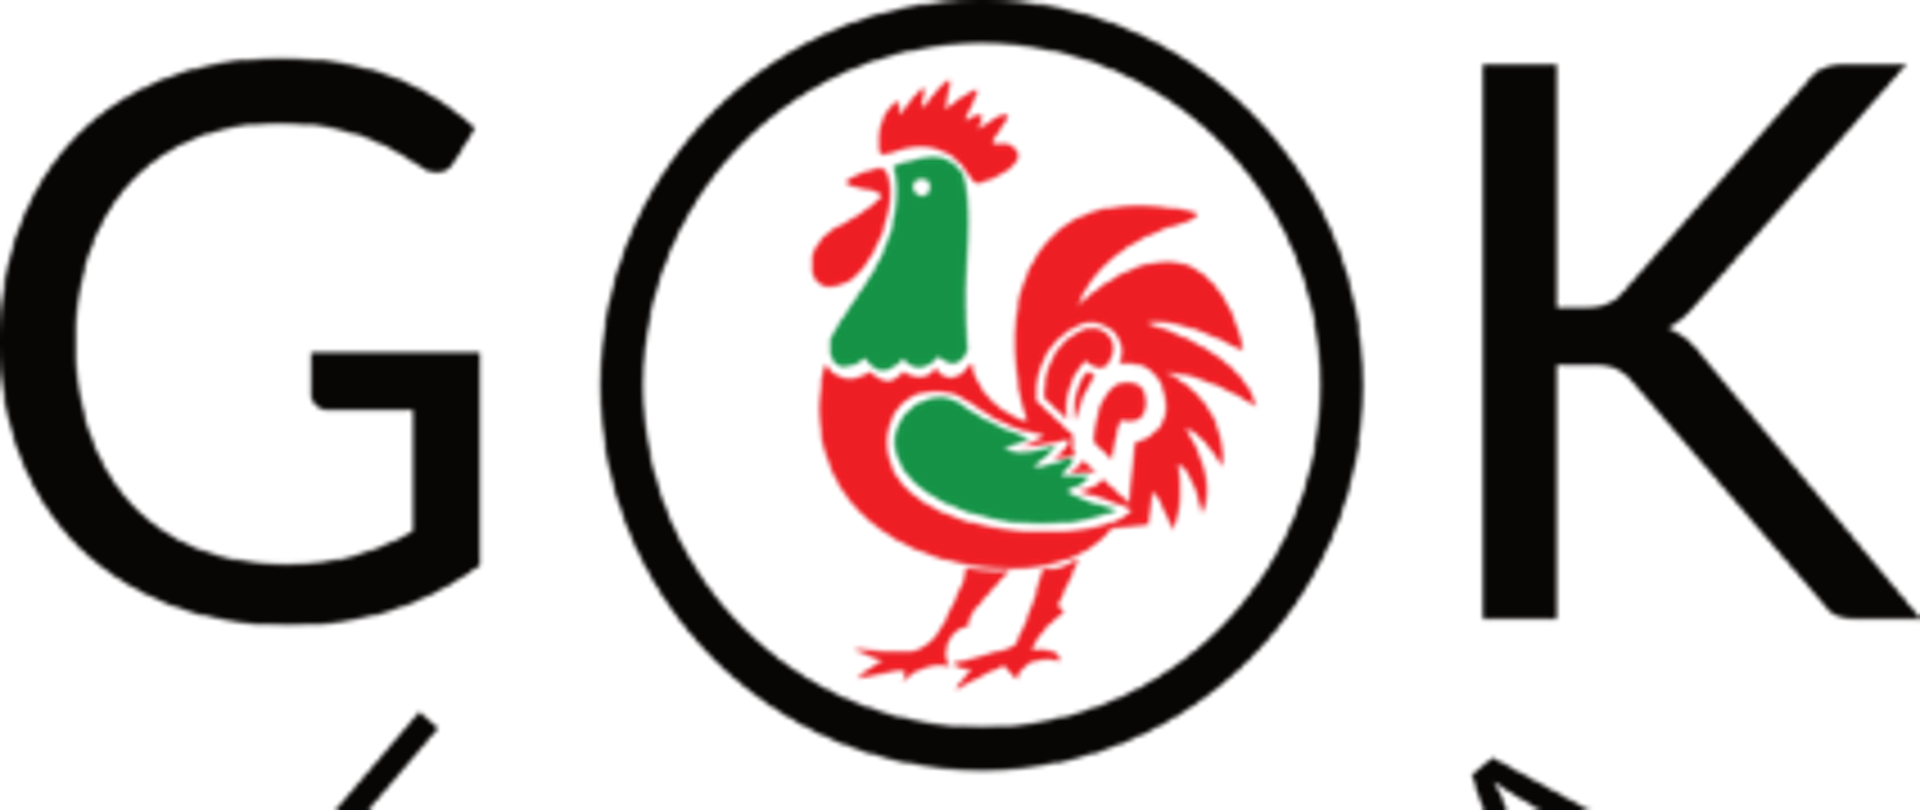 Logo Gminnego Ośrodka Kultury napis GOK poziomo oraz Lubenia owalny napis pod słowem gok wewnątrz wielkiej litery O zielono biały kogut